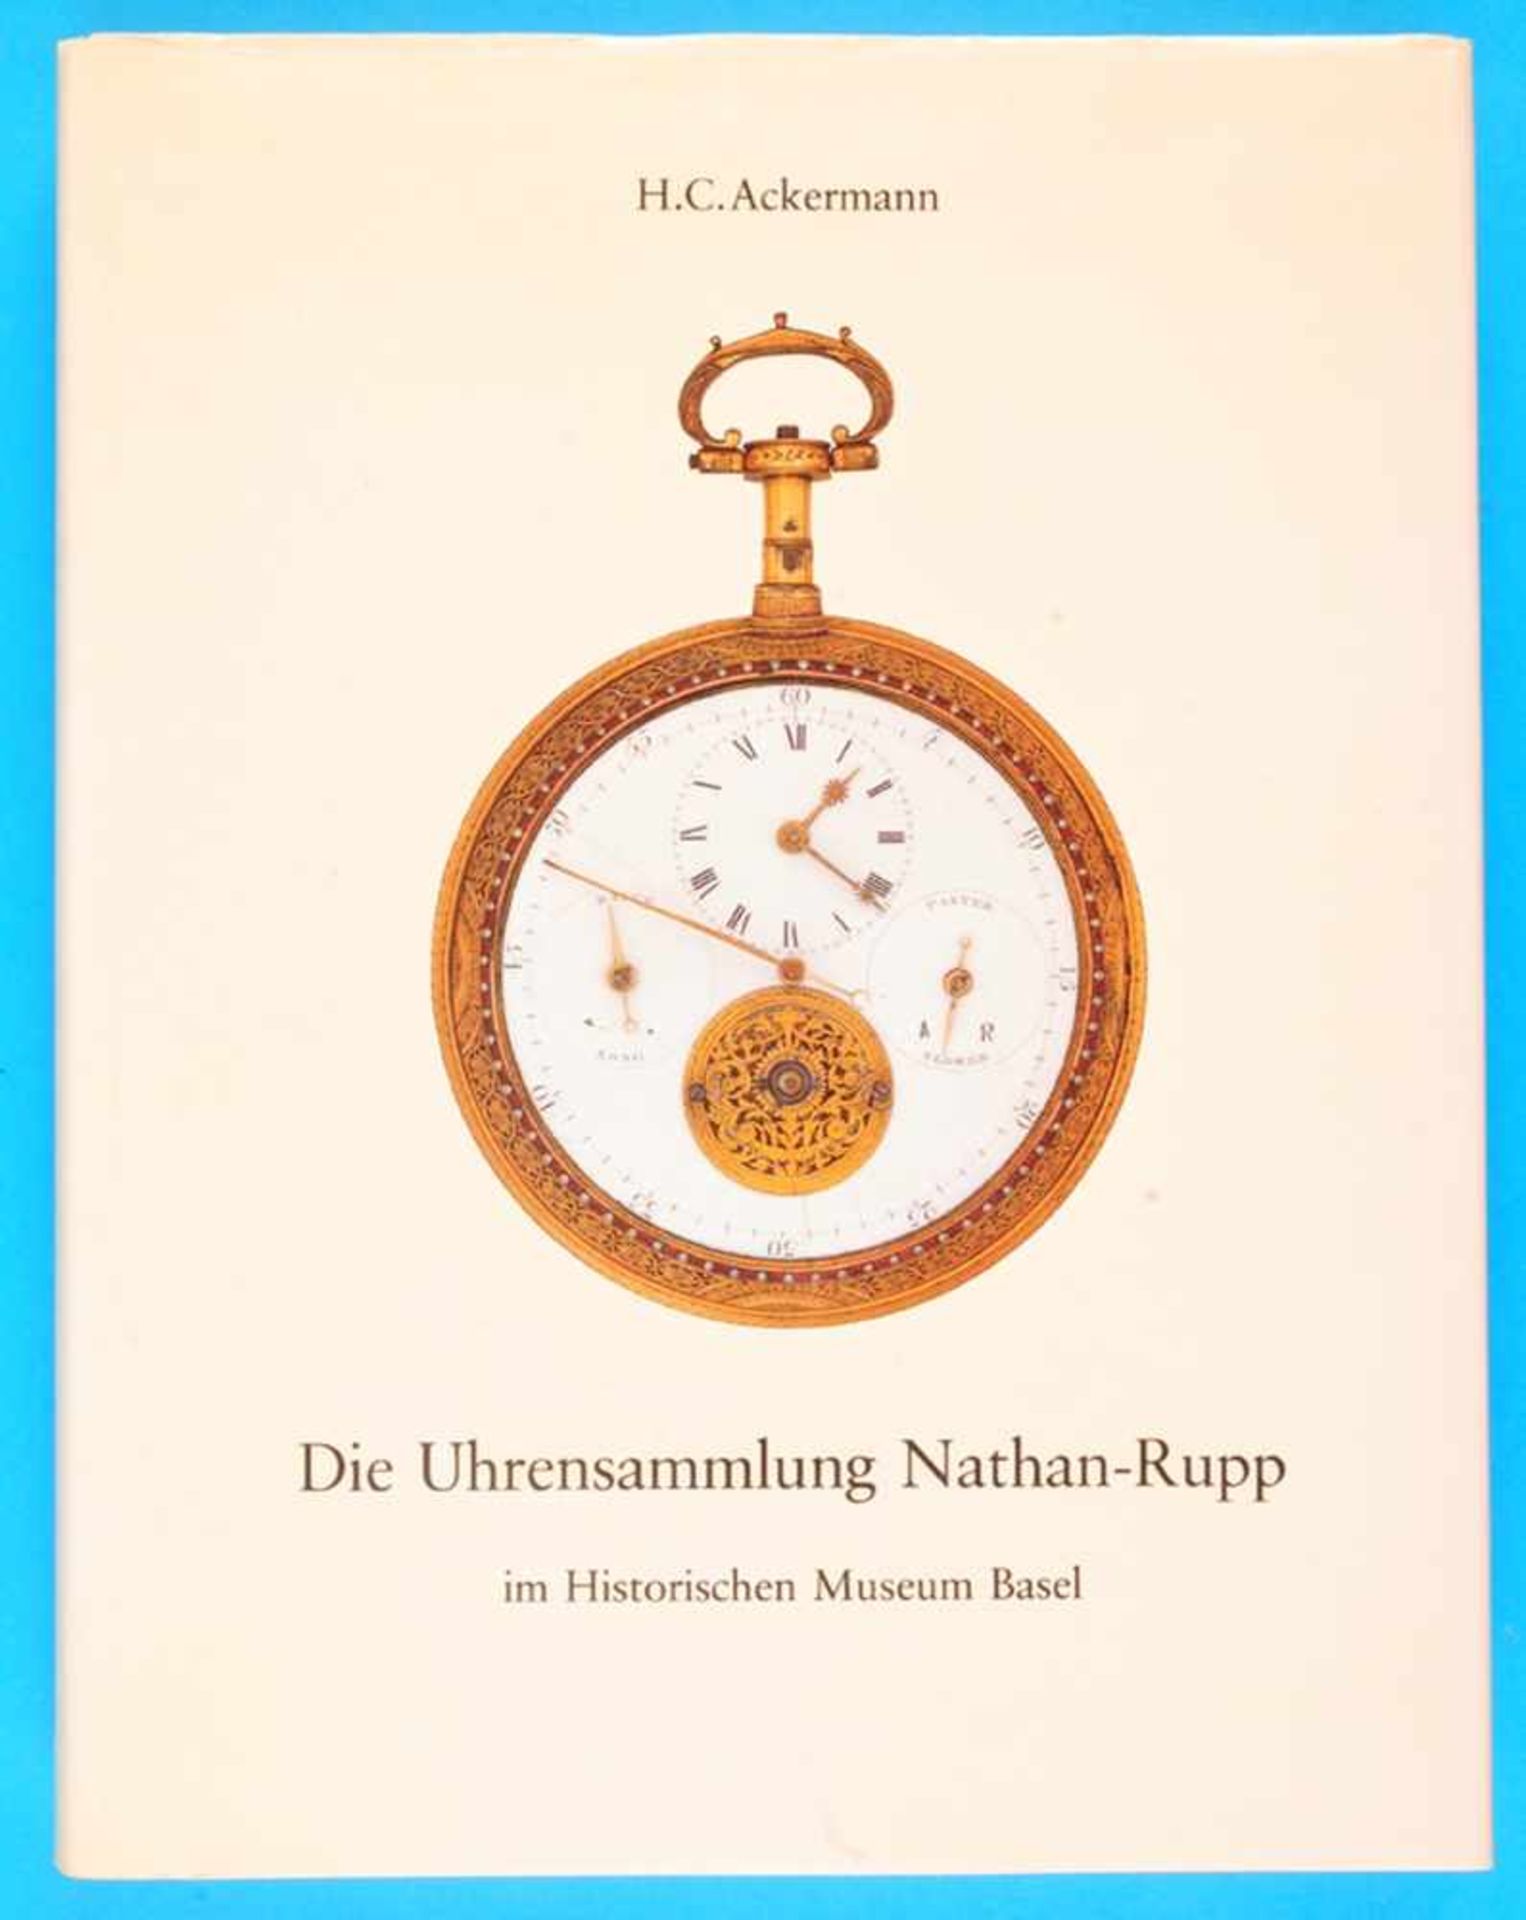 H. C. Ackermann, Die Uhrensammlung Nathan-Rupp im historischen Museum BaselH. C. Ackermann, Die